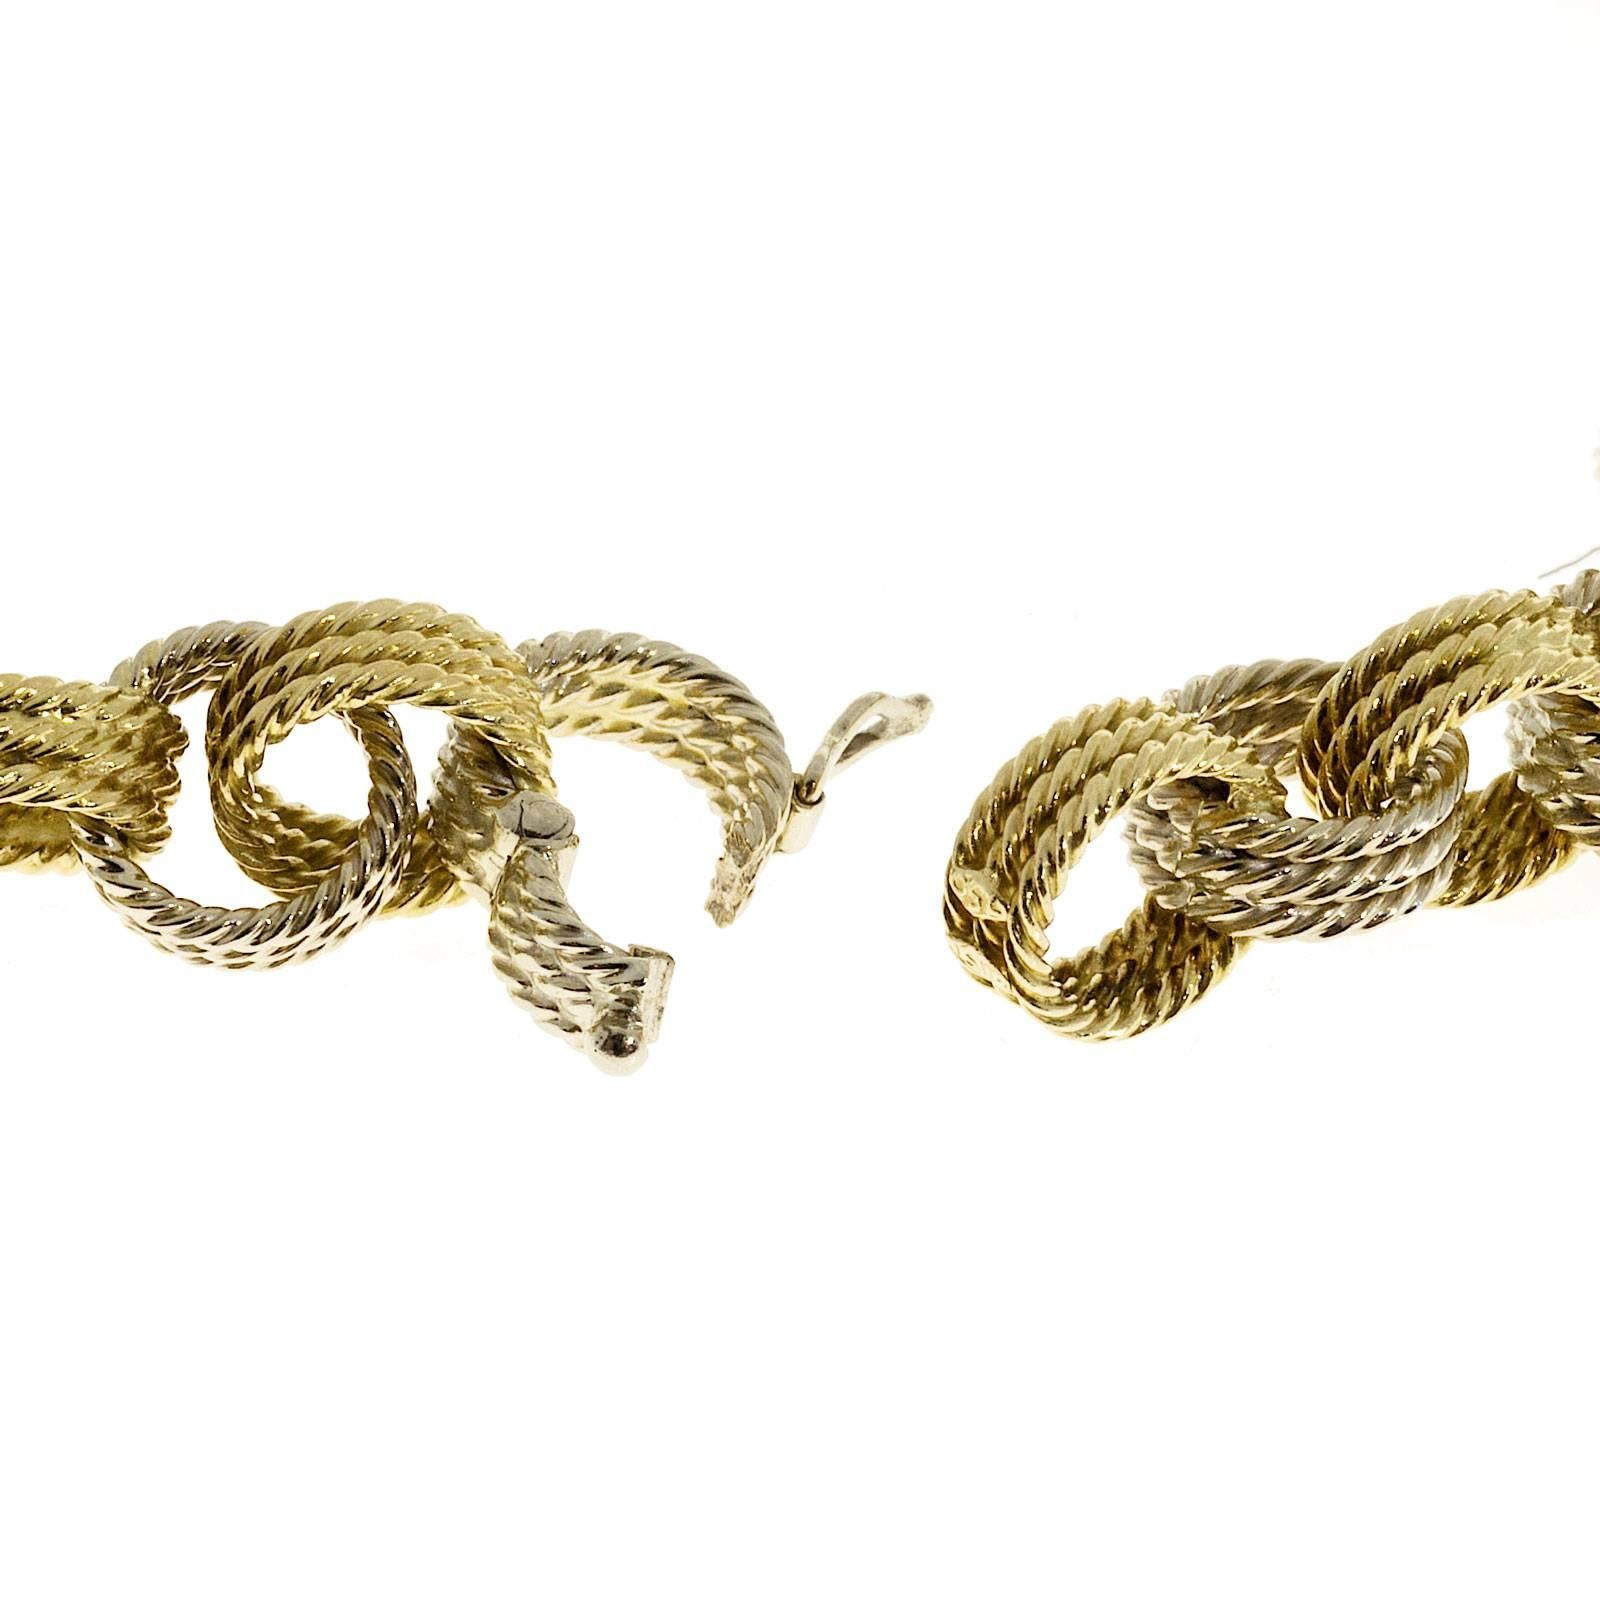 Handmade 2 Color Gold Wire Link Necklace Bracelet 1